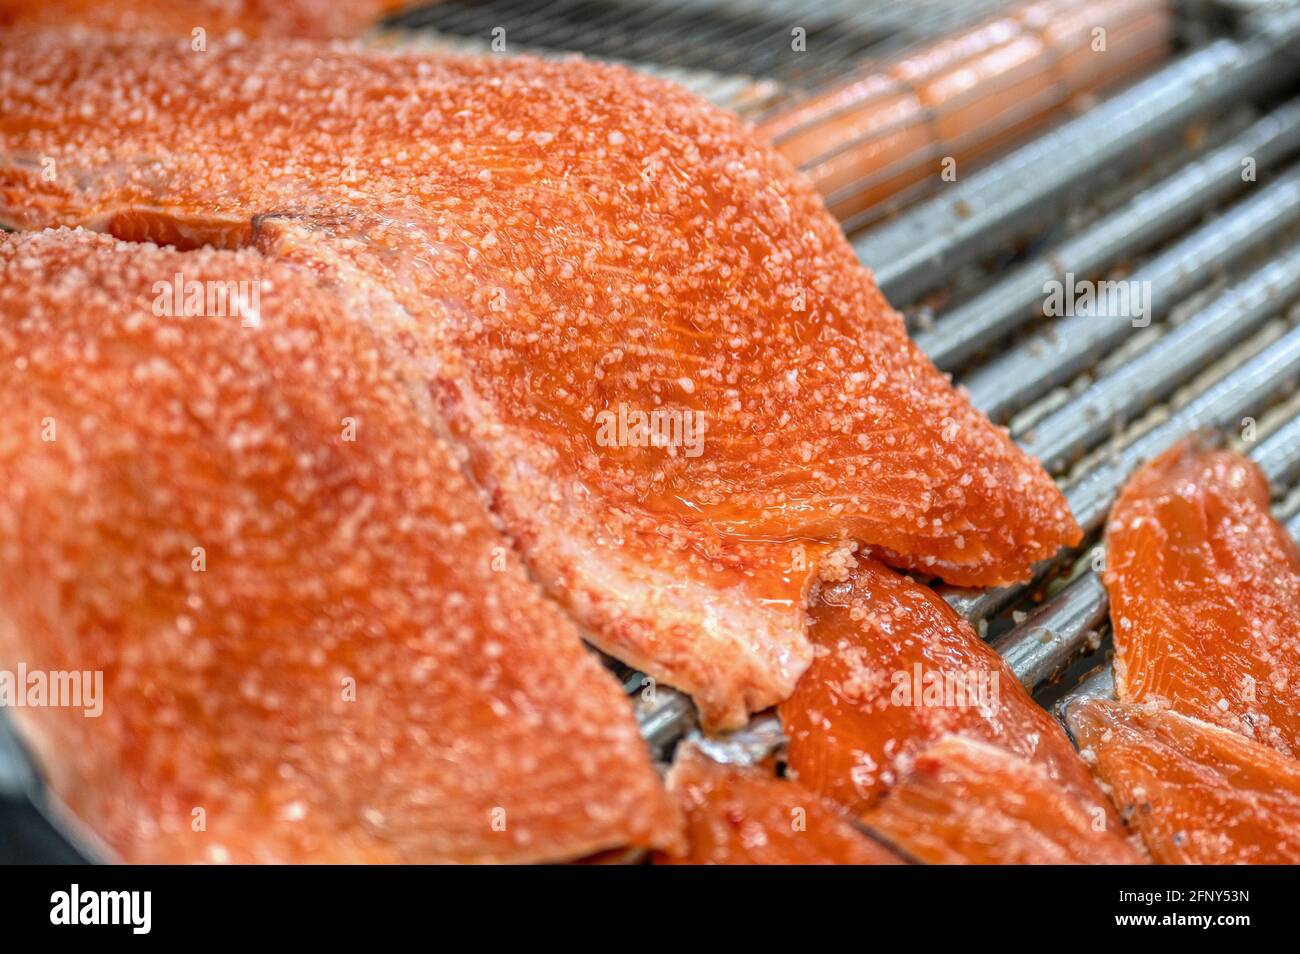 Auf dem Förderband liegen viele Stücke Rotfischfilet. Der Fisch ist mit einer Schicht groben Salzes bedeckt Stockfoto